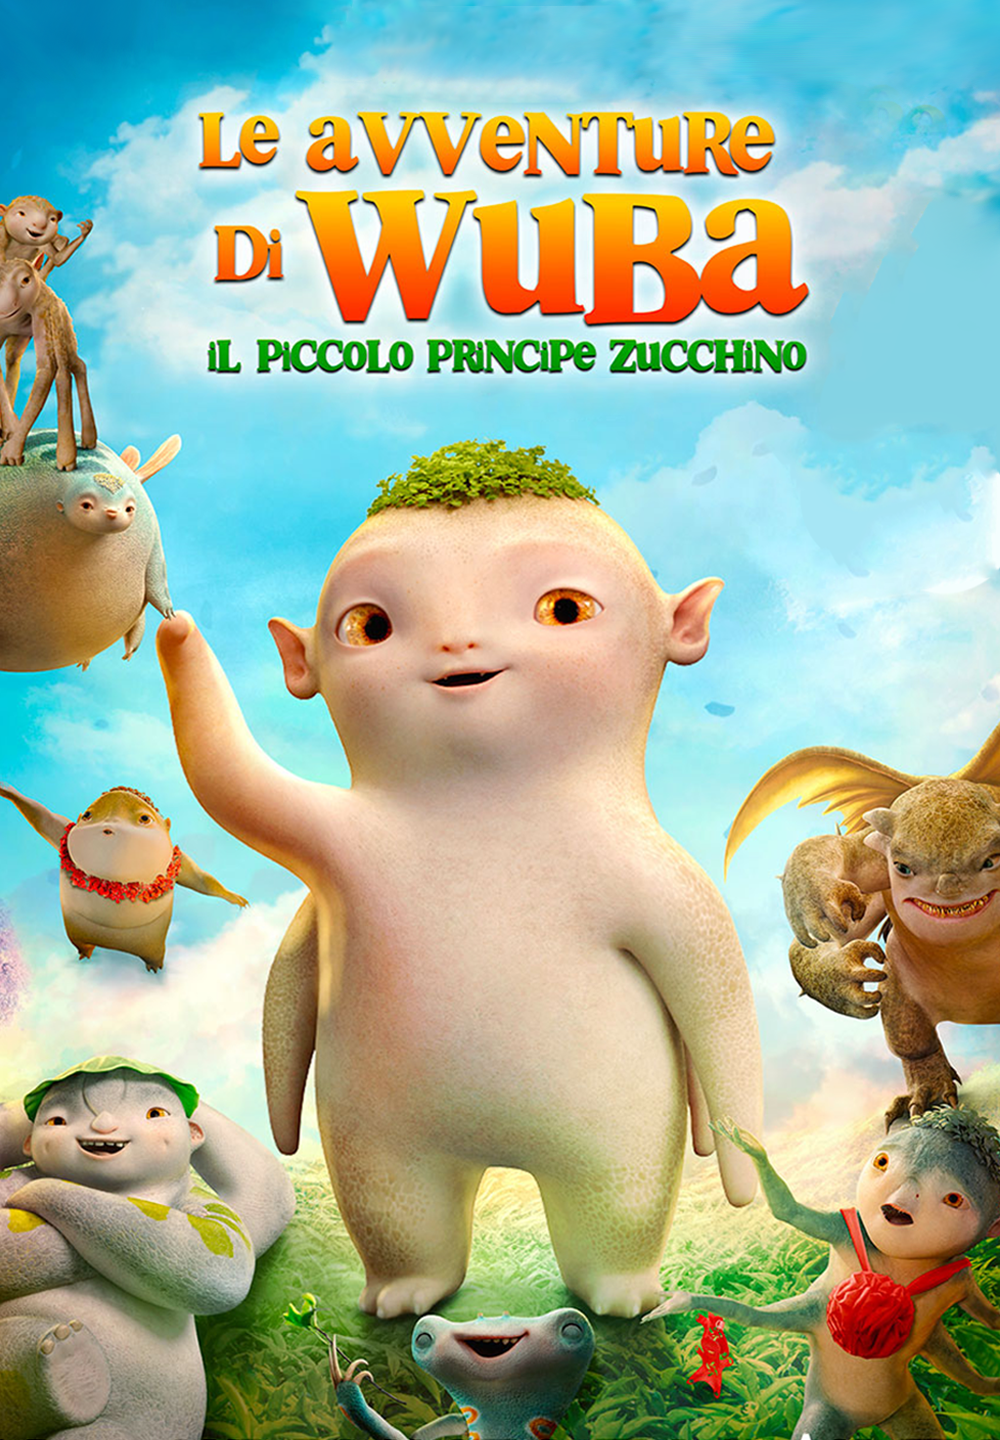 Le avventure di Wuba – Il piccolo principe Zucchino [HD] (2020)